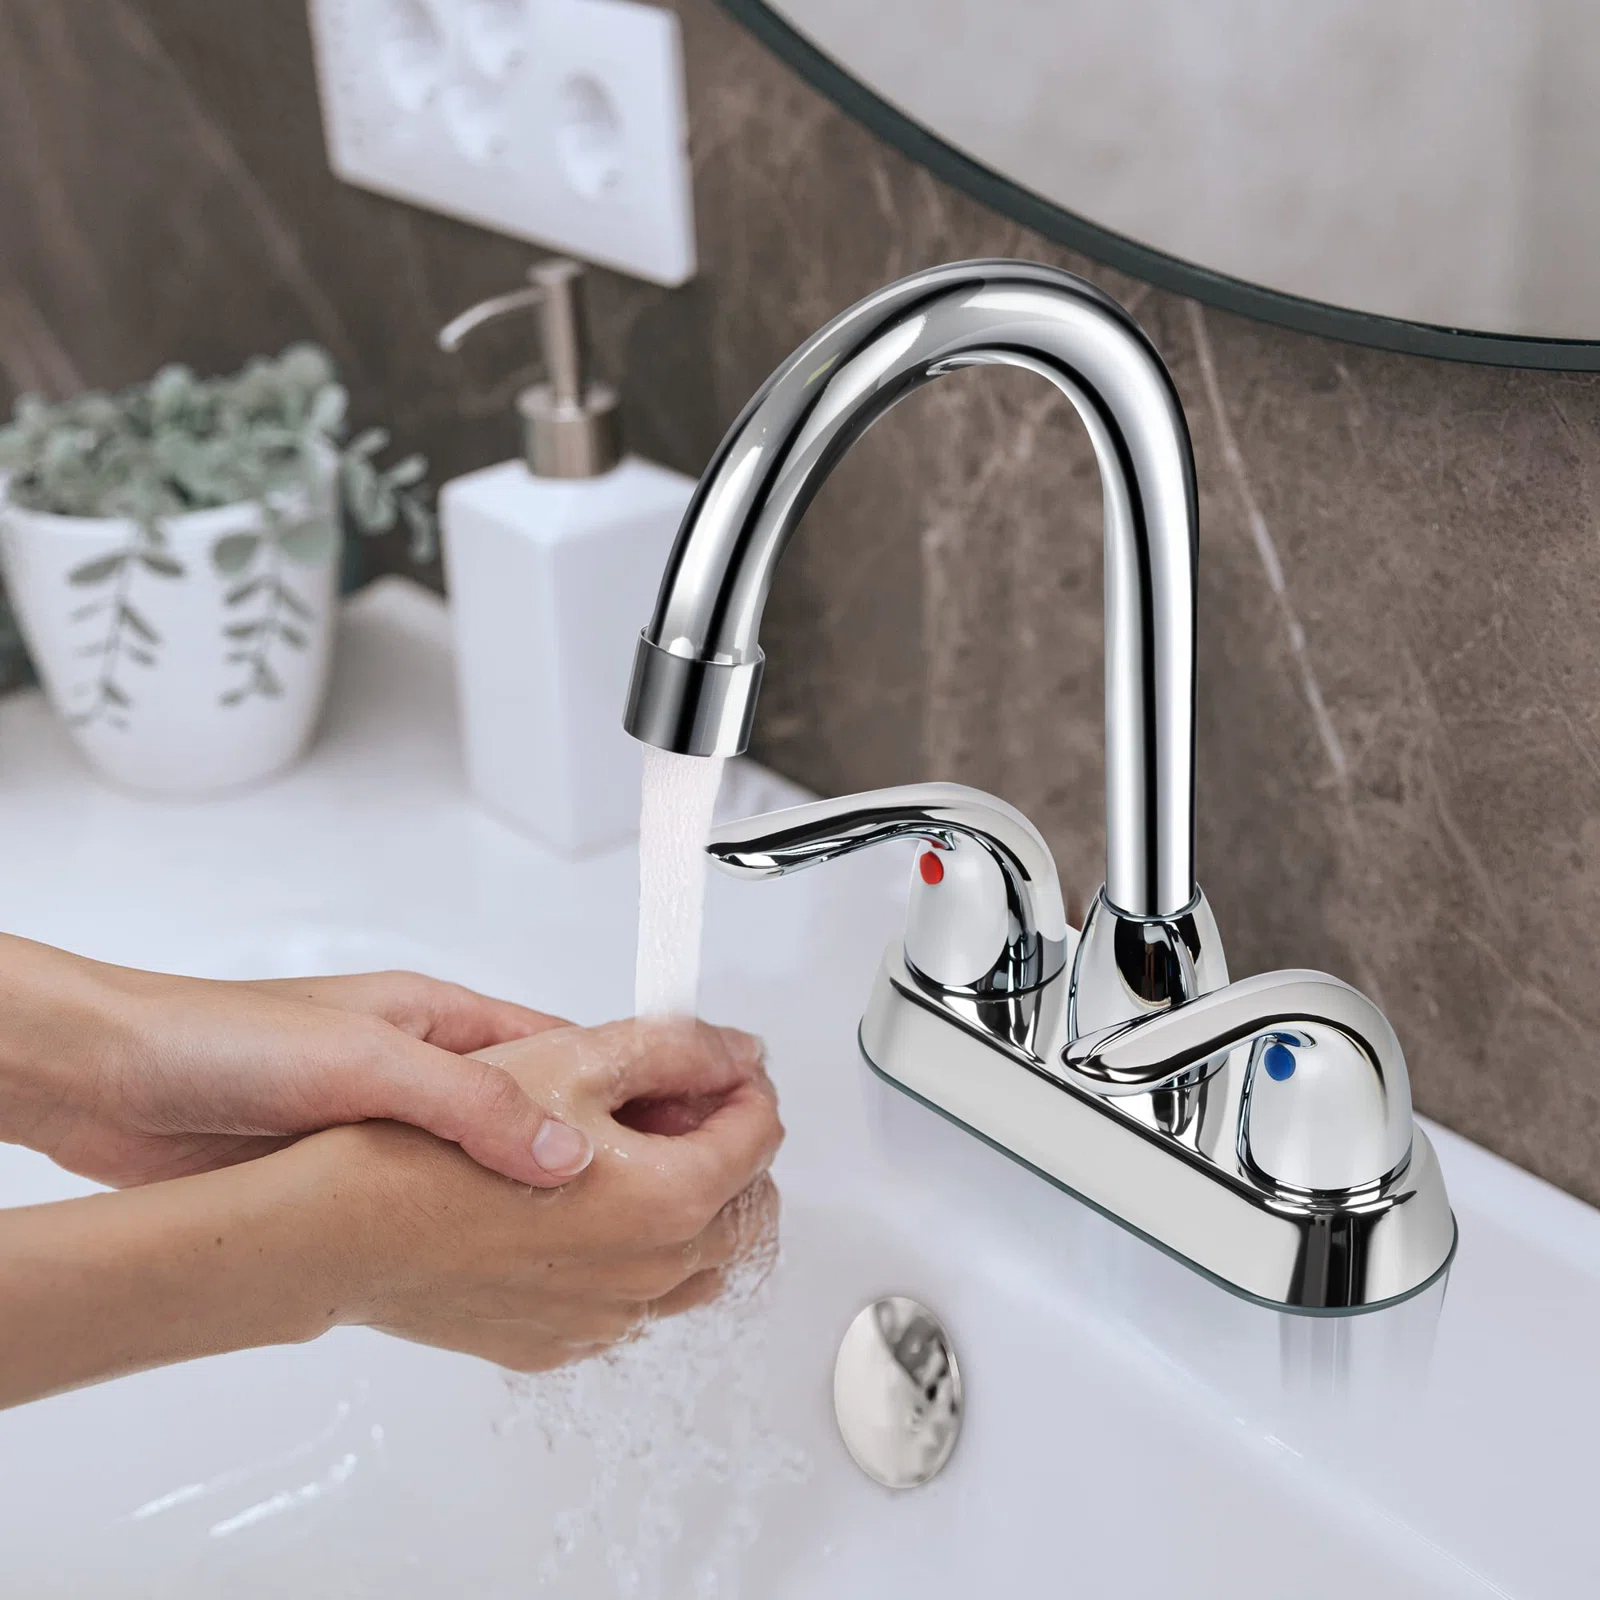 CUPC wijdverspreide 4 inch centerset 2 handgrepen badkamer wastafel kraan badkamer watermengkranen